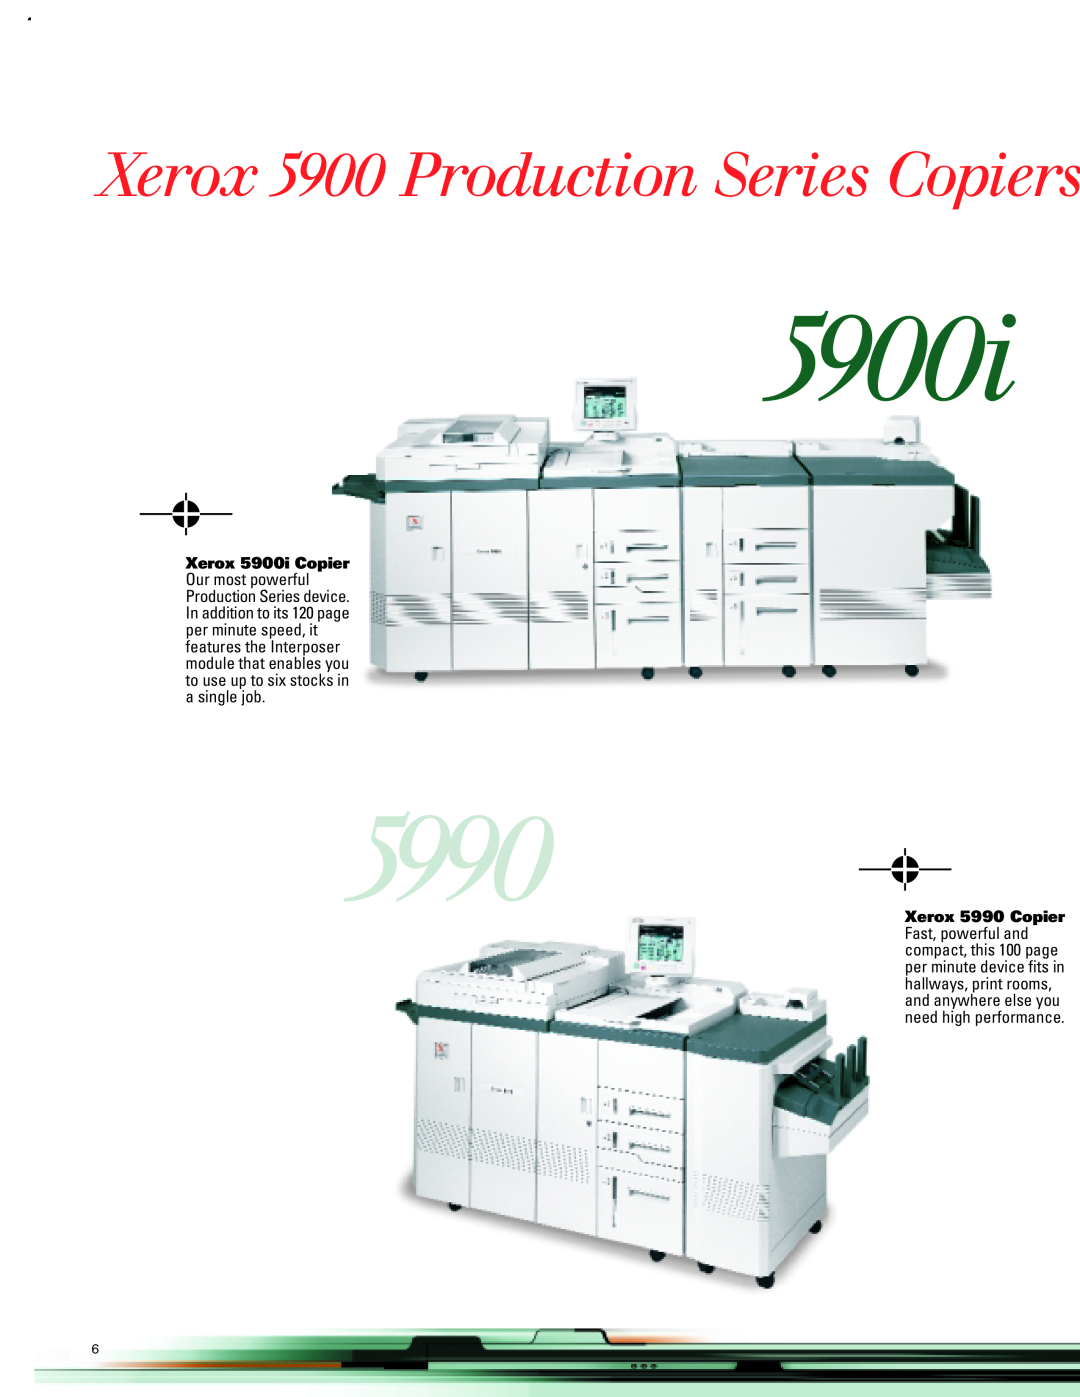 Xerox manual Xerox 5900 Production Series Copiers, Xerox 5900i Copier, Xerox 5990 Copier 